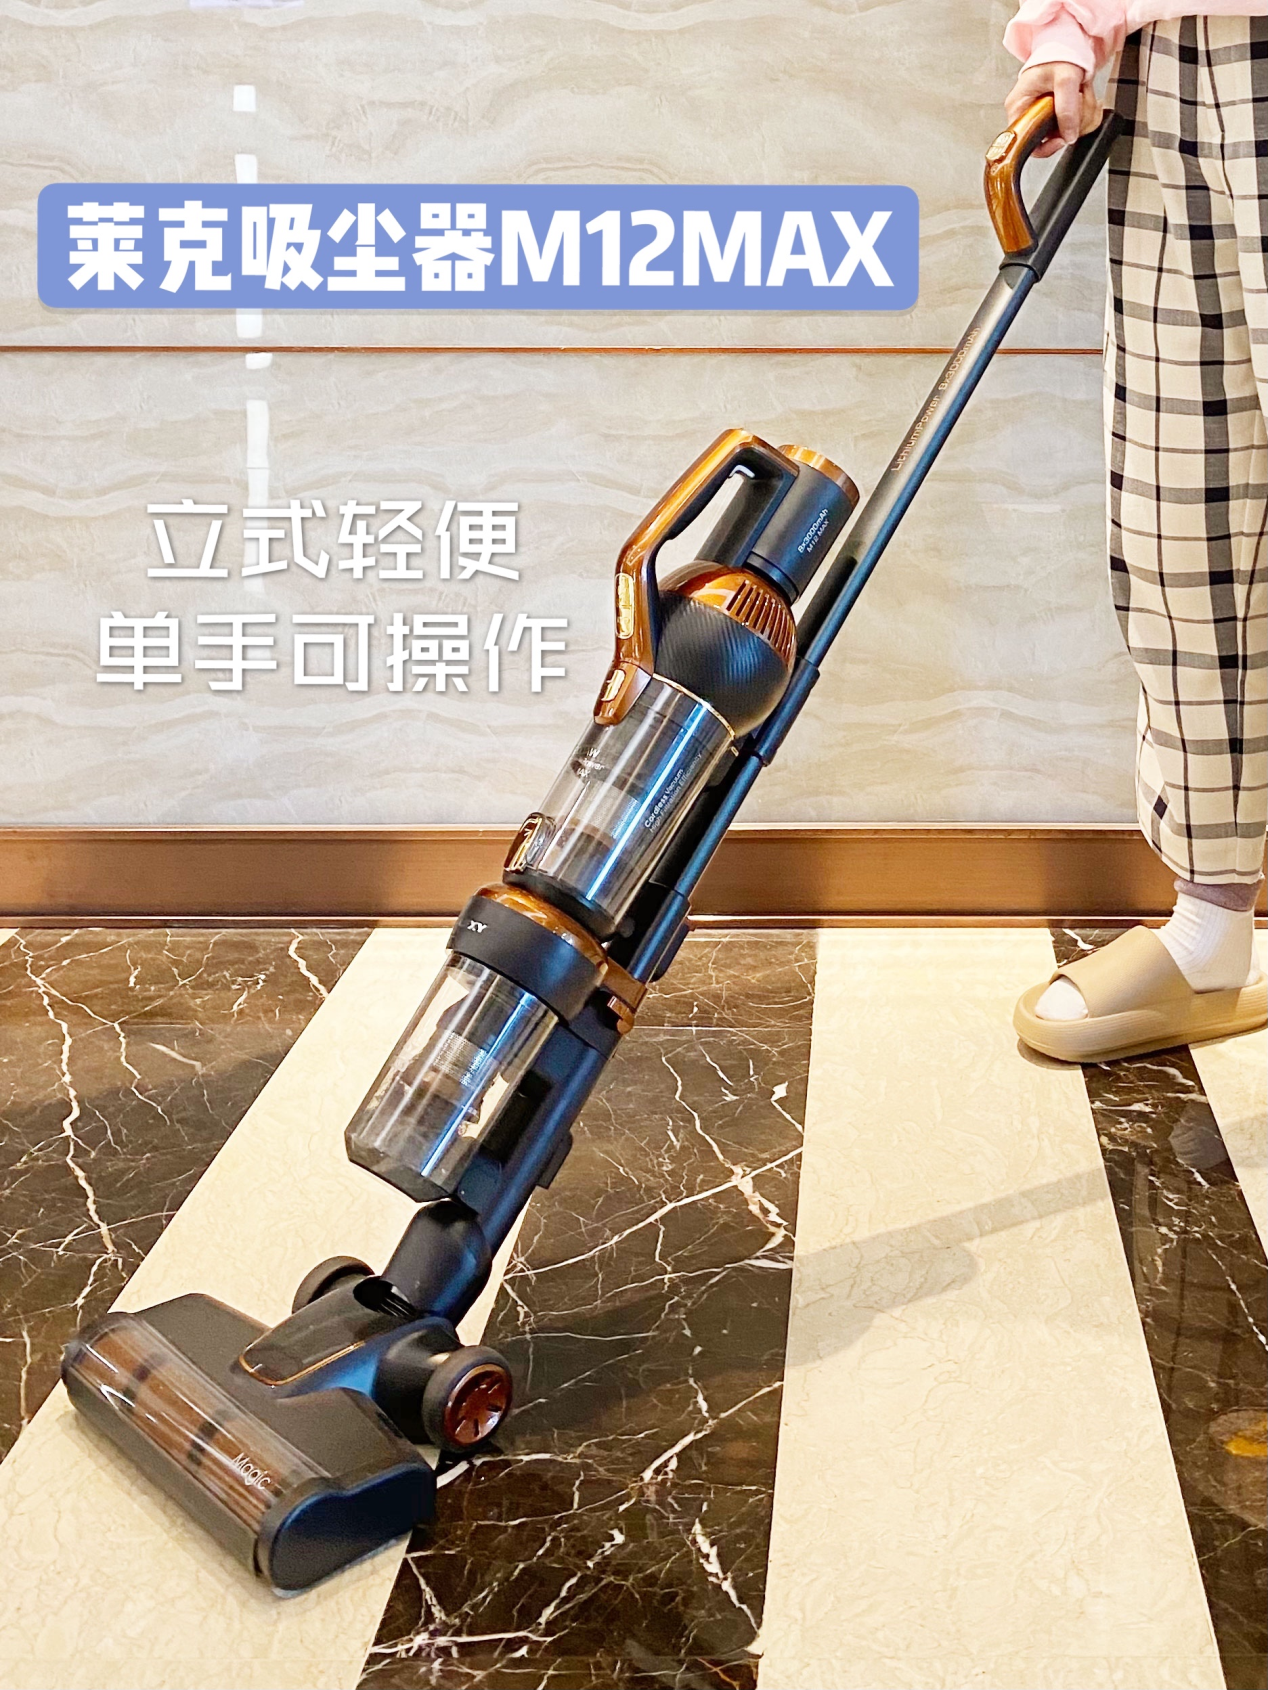 择莱克M12 MAX吸尘器，将一站式全屋清洁贯彻到底